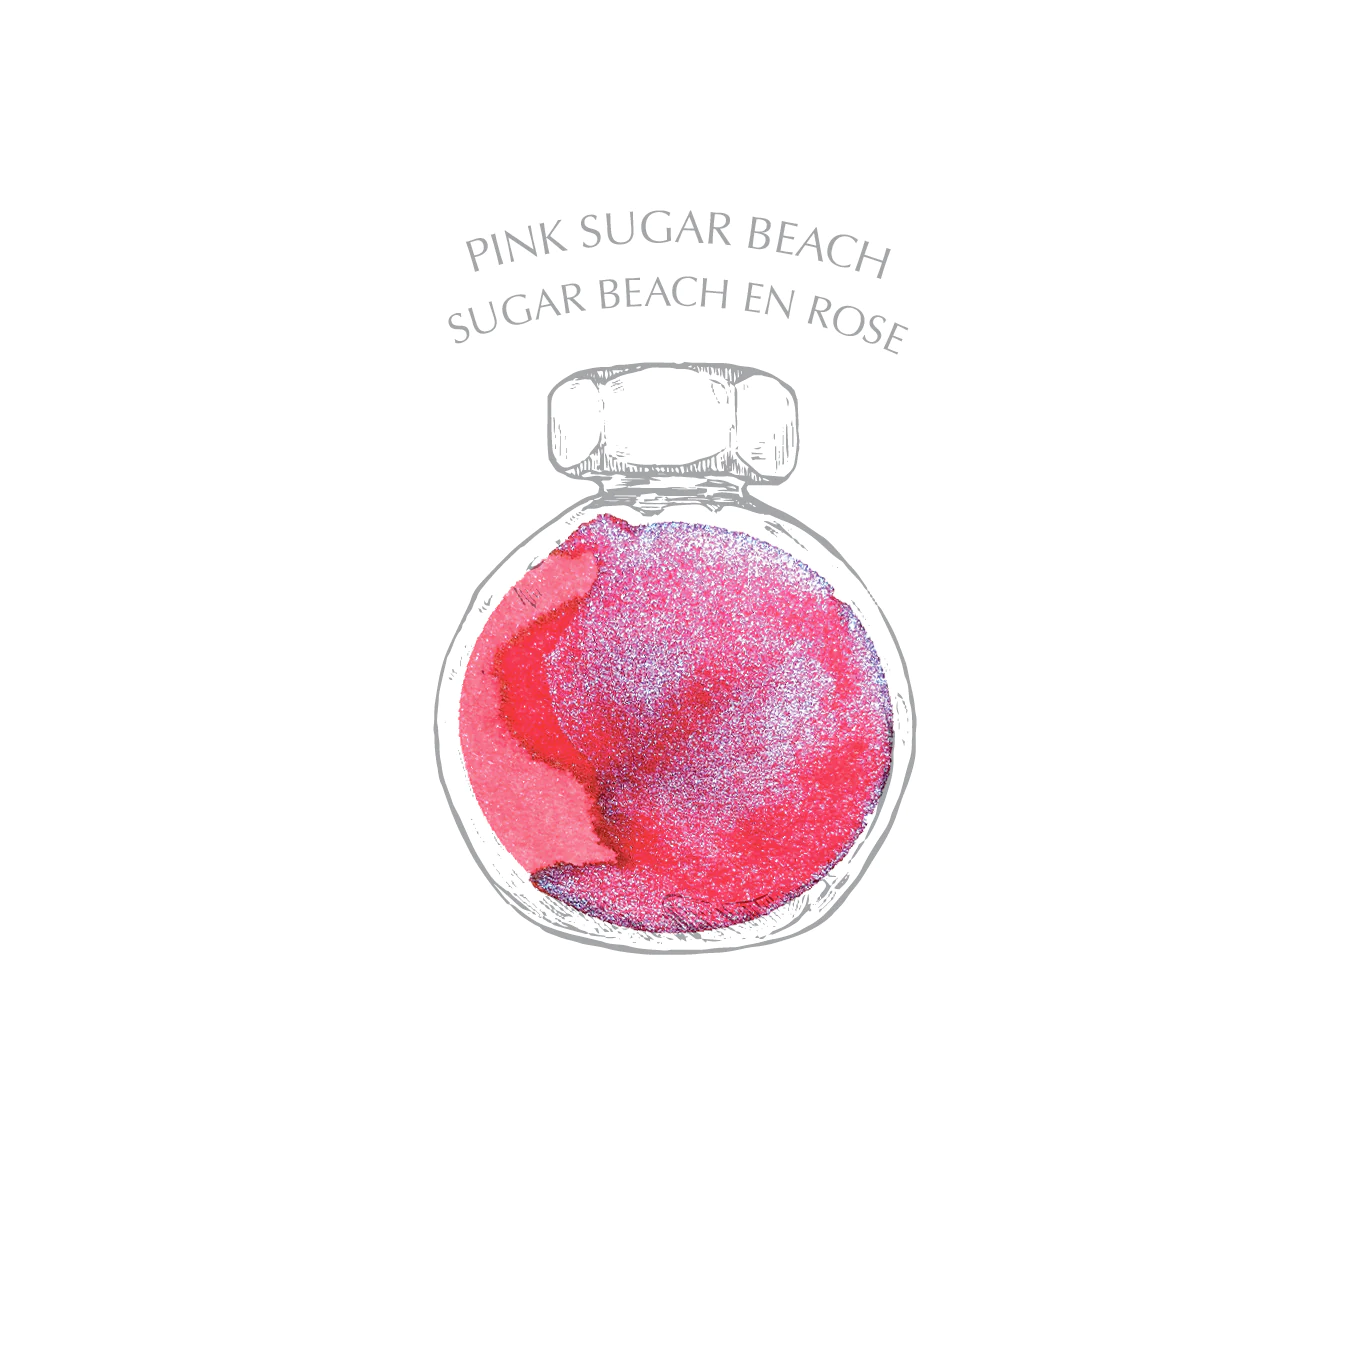 38 ml Füllfederhaltertinte – Pink Sugar Beach